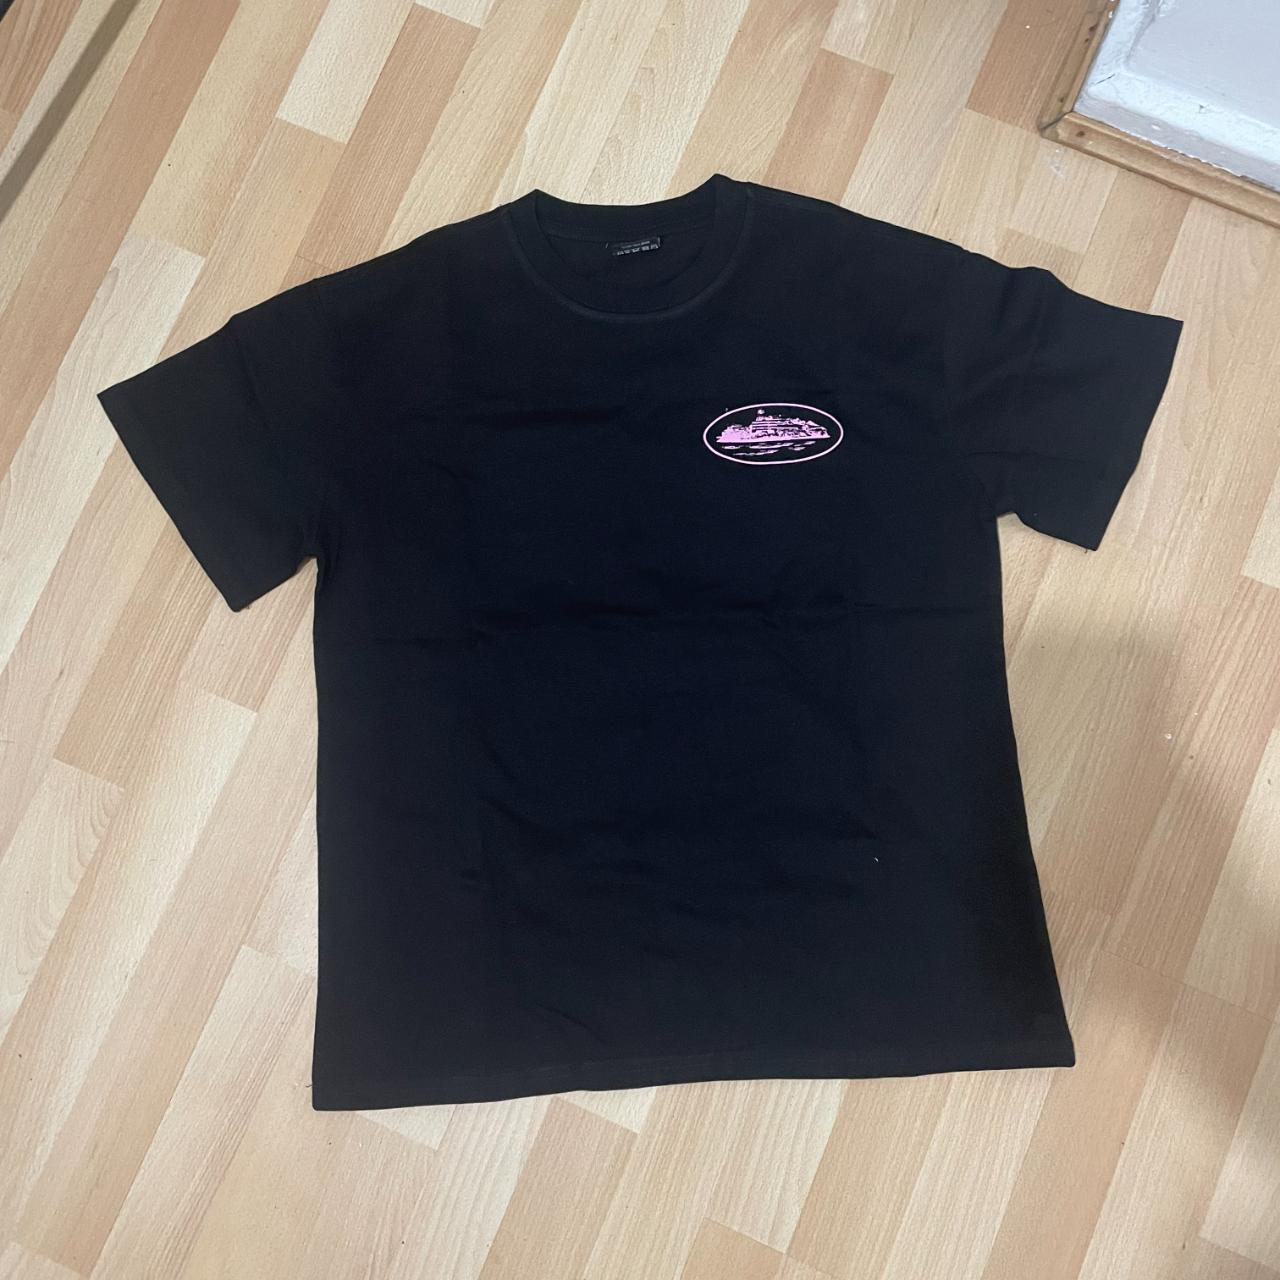 Corteiz t-shirt black and purple - Depop